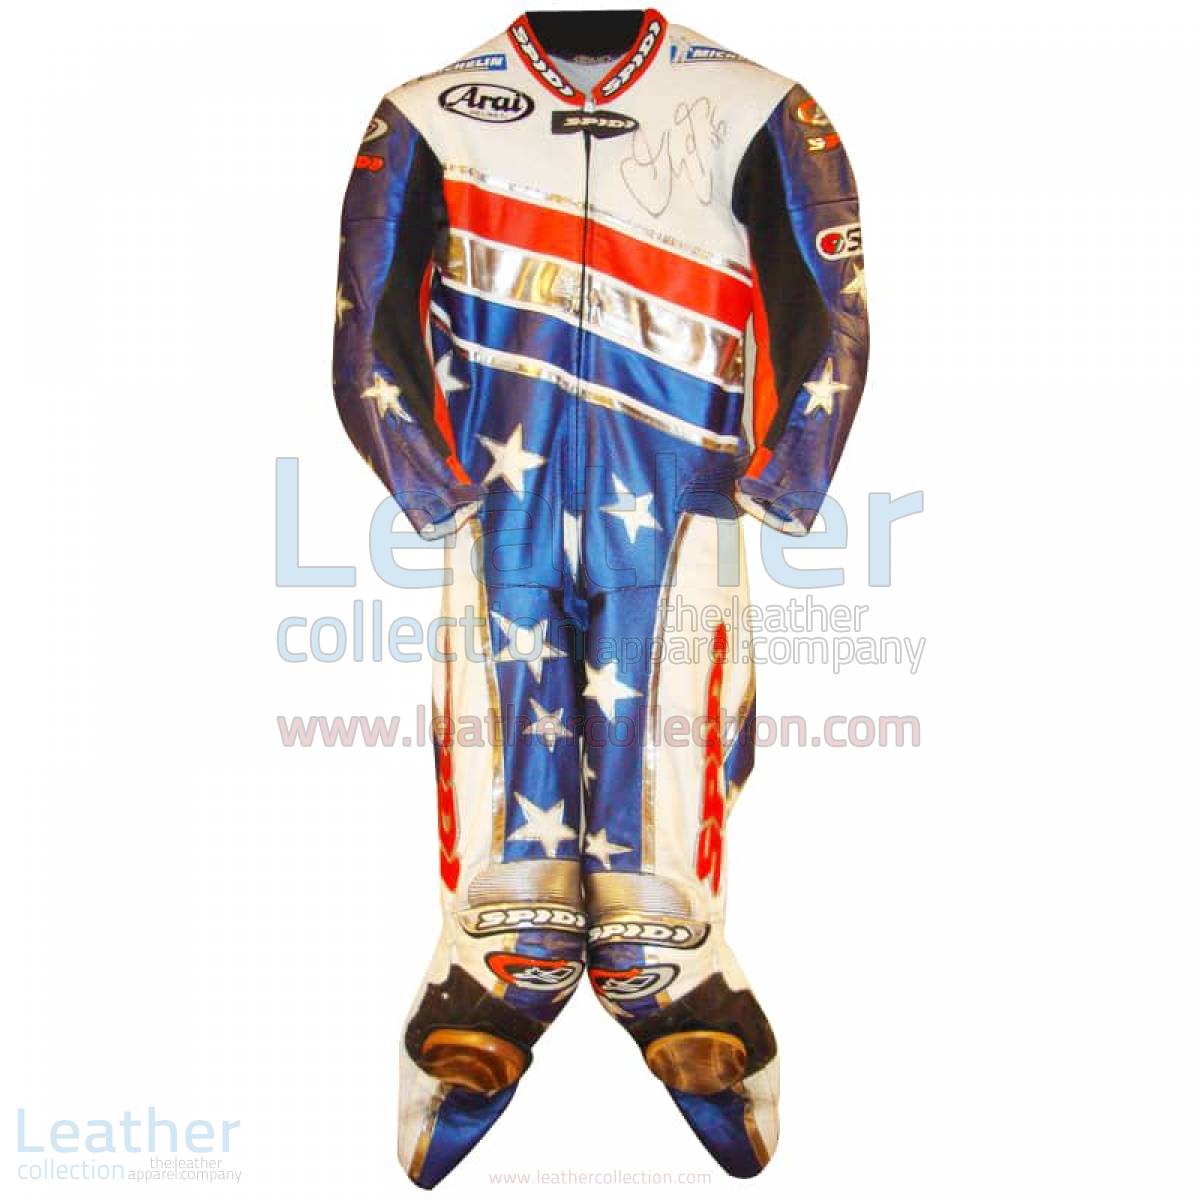 Colin Edwards Aprilia Leathers 2003 MotoGP Pre-season